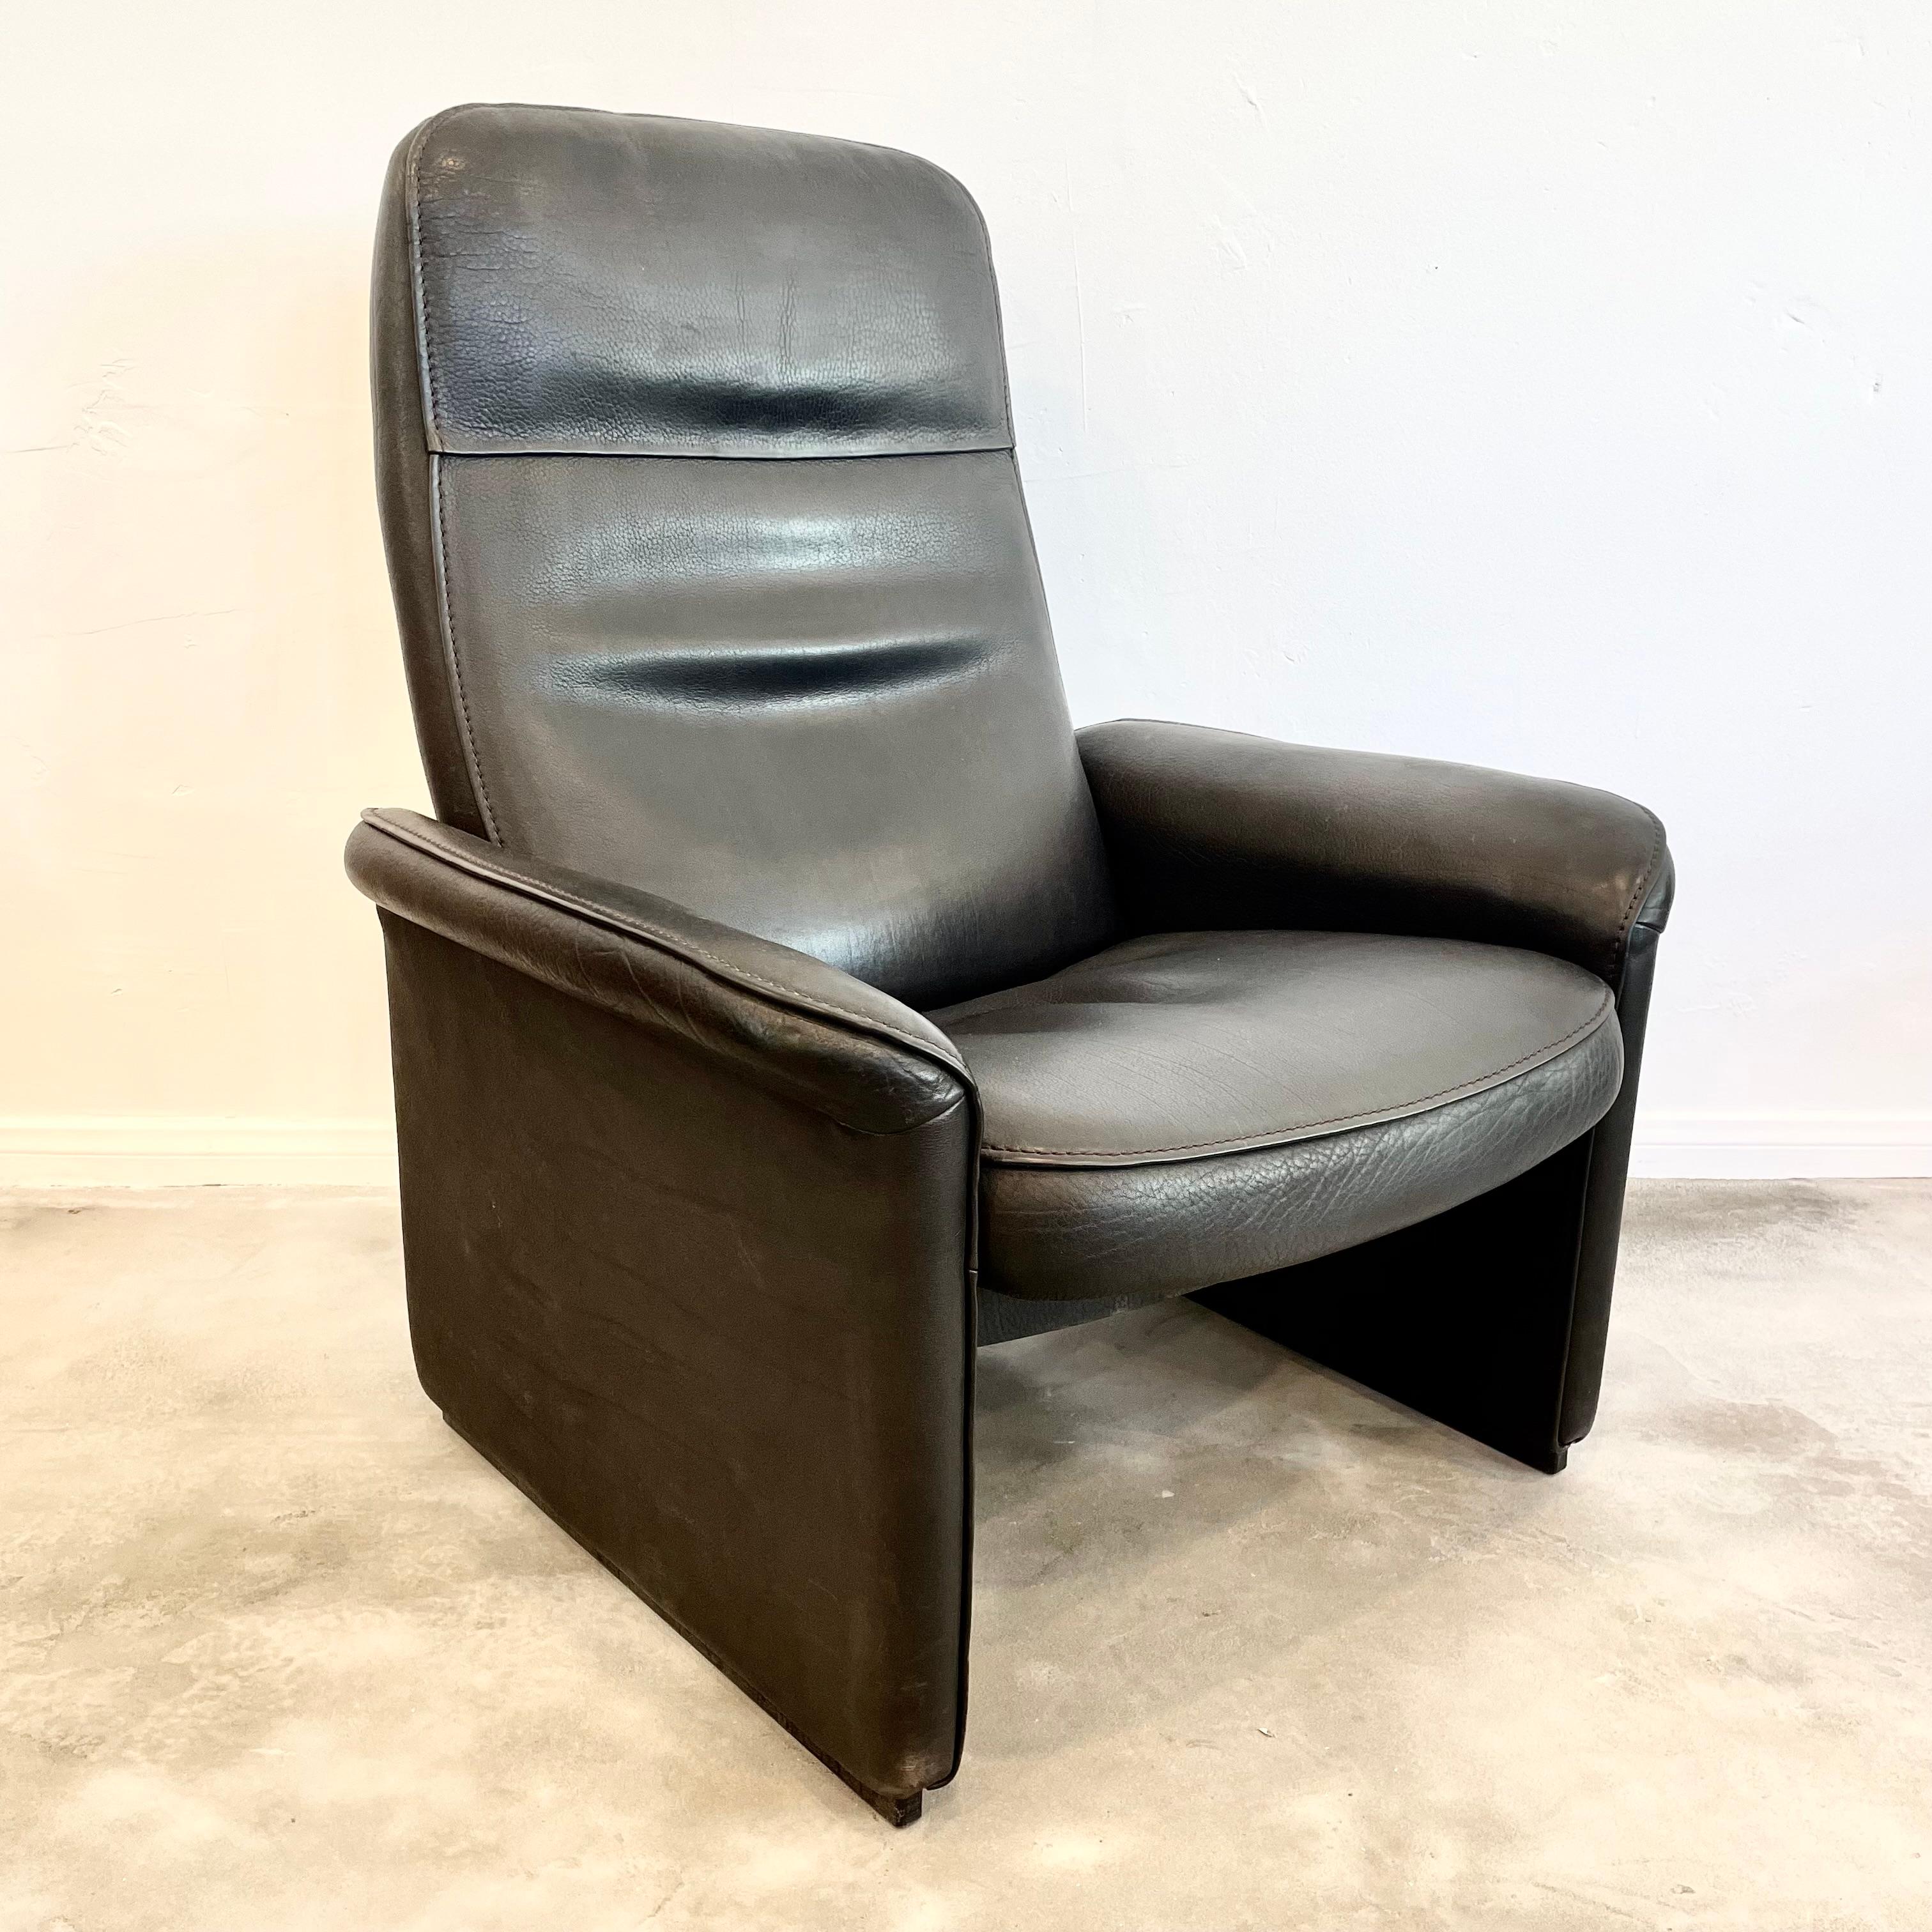 Paire de chaises longues de direction par De Sede, fabriquées dans les années 1970, Suisse. Les chaises sont dotées d'un mécanisme d'inclinaison qui vous permet de les incliner presque à plat si vous le souhaitez. Extrêmement confortable. Ces